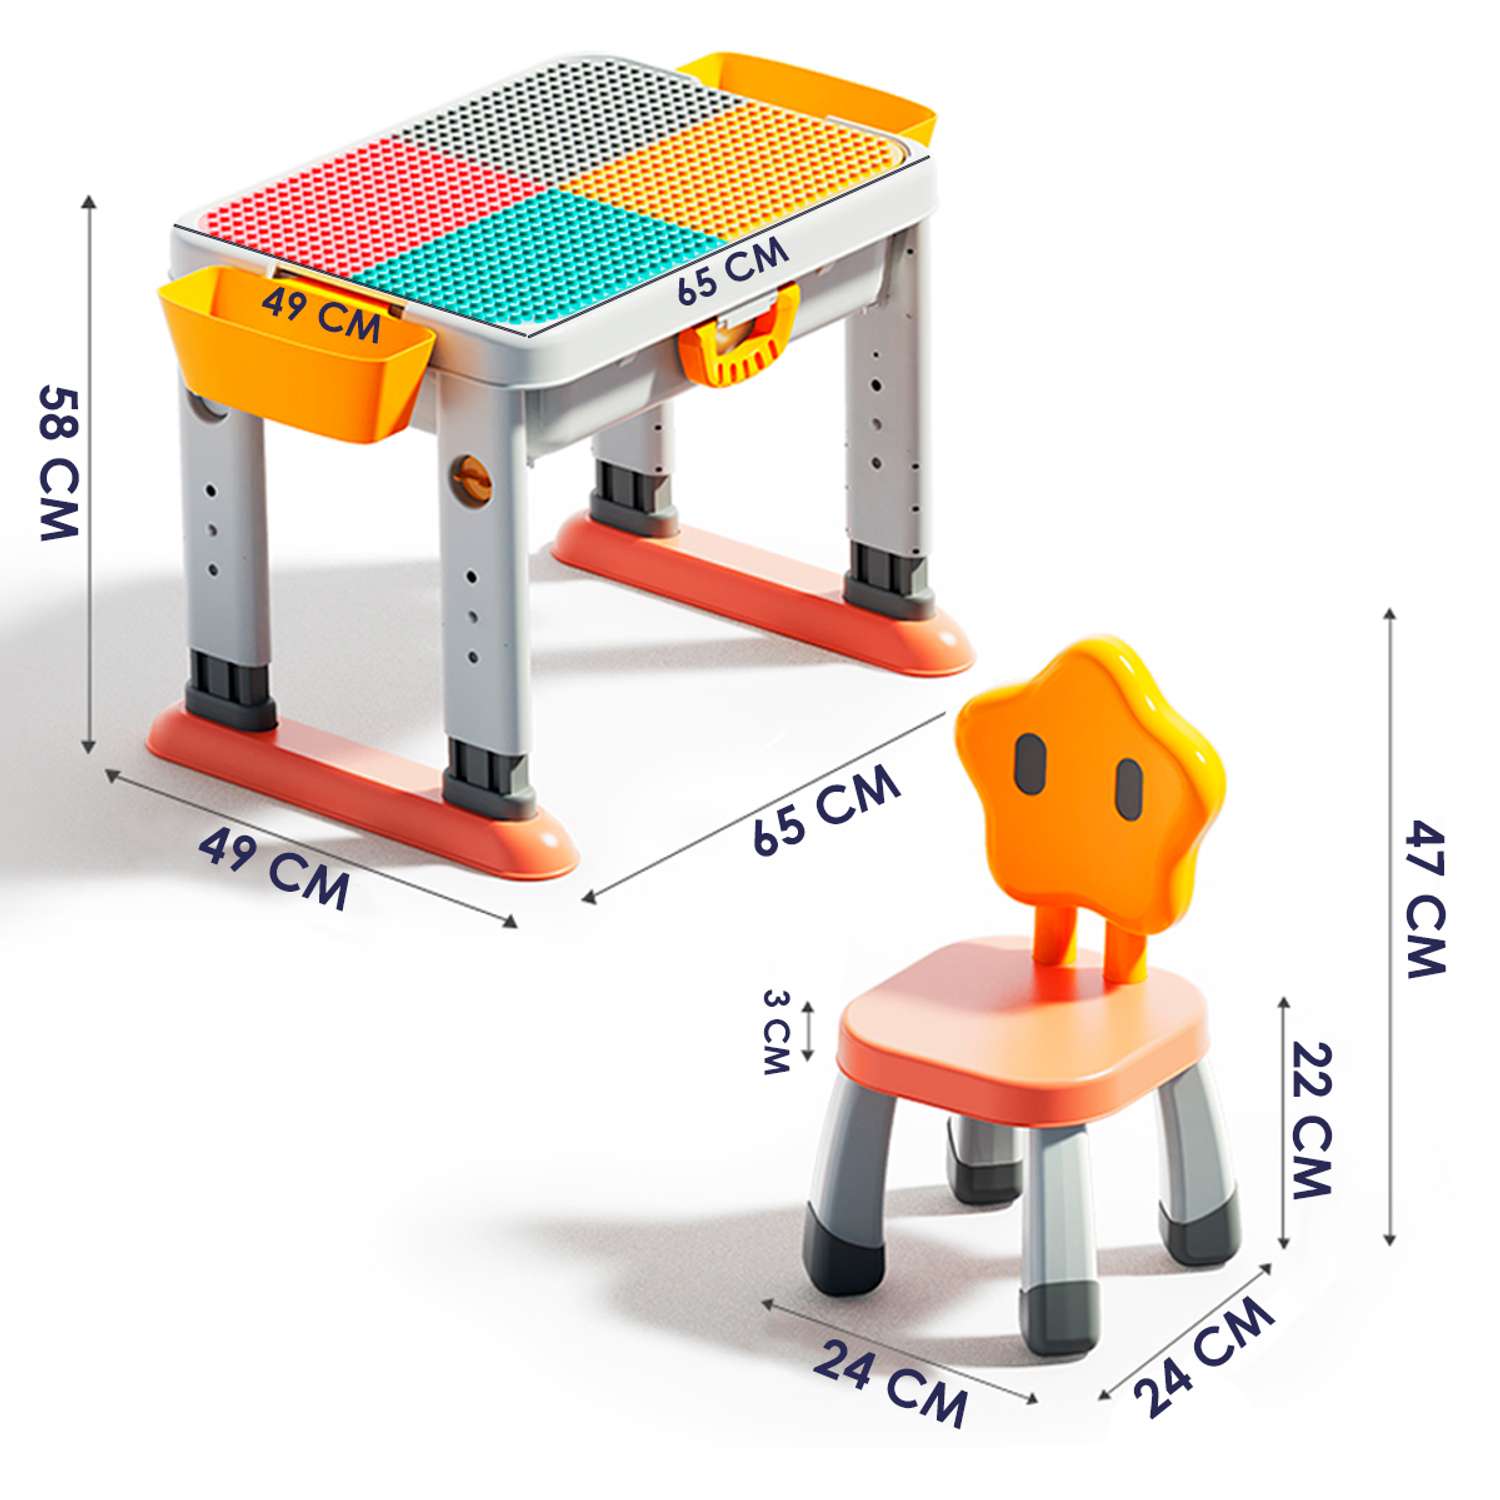 Развивающий детский столик WiMI со стулом и контейнером для хранения - фото 5